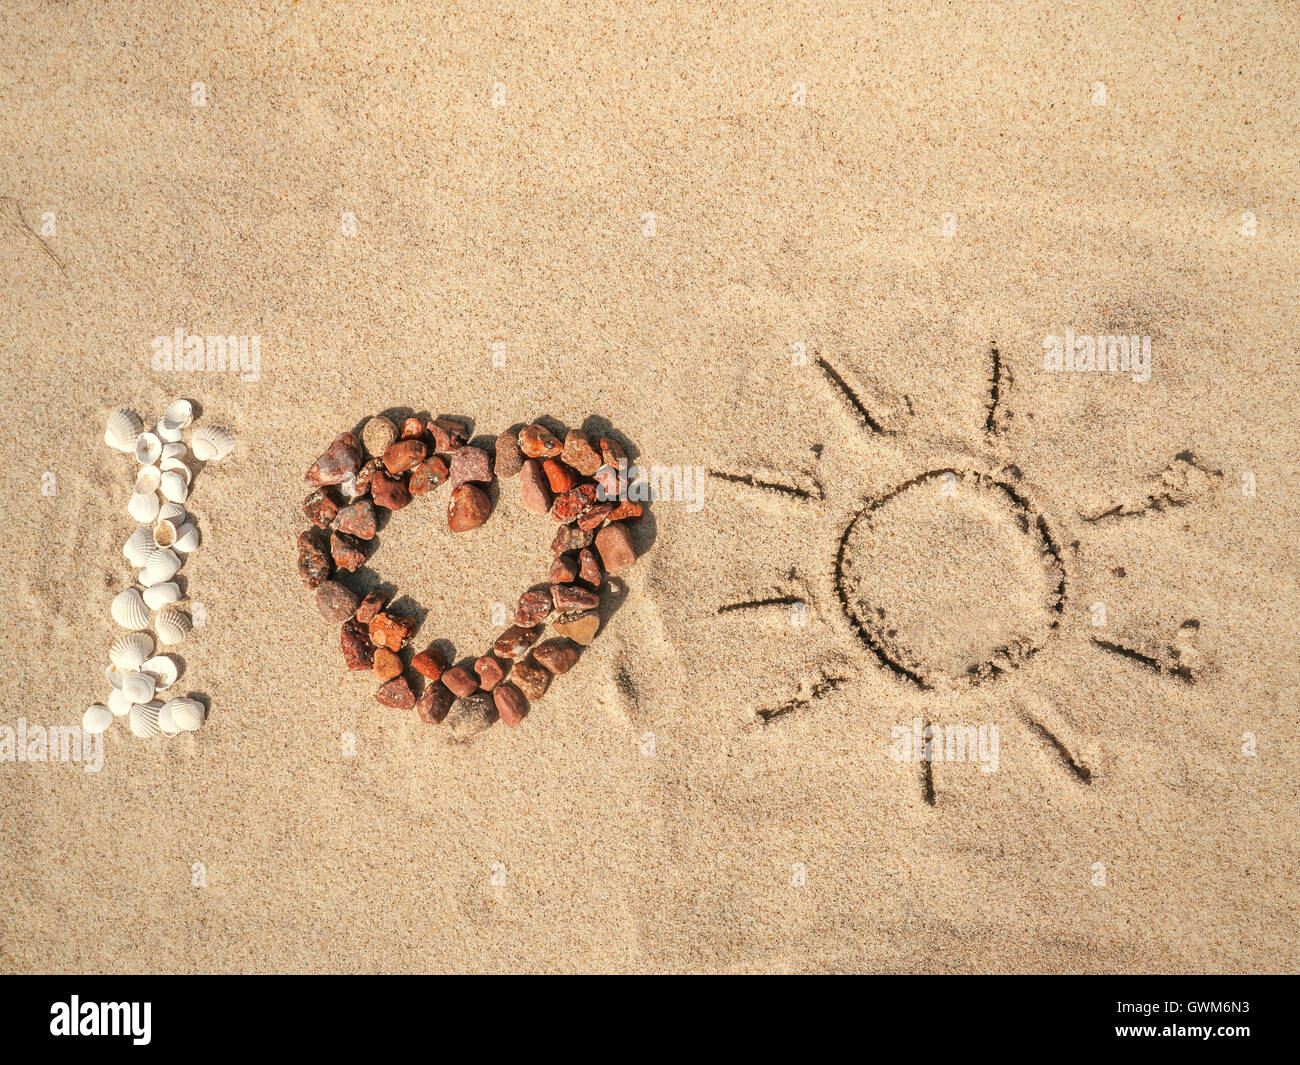 Captura conceptual de I Love Sun como sigla ordenados de conchas, guijarros y rojo signo solar dibujado a mano sobre la arena de la playa Foto de stock